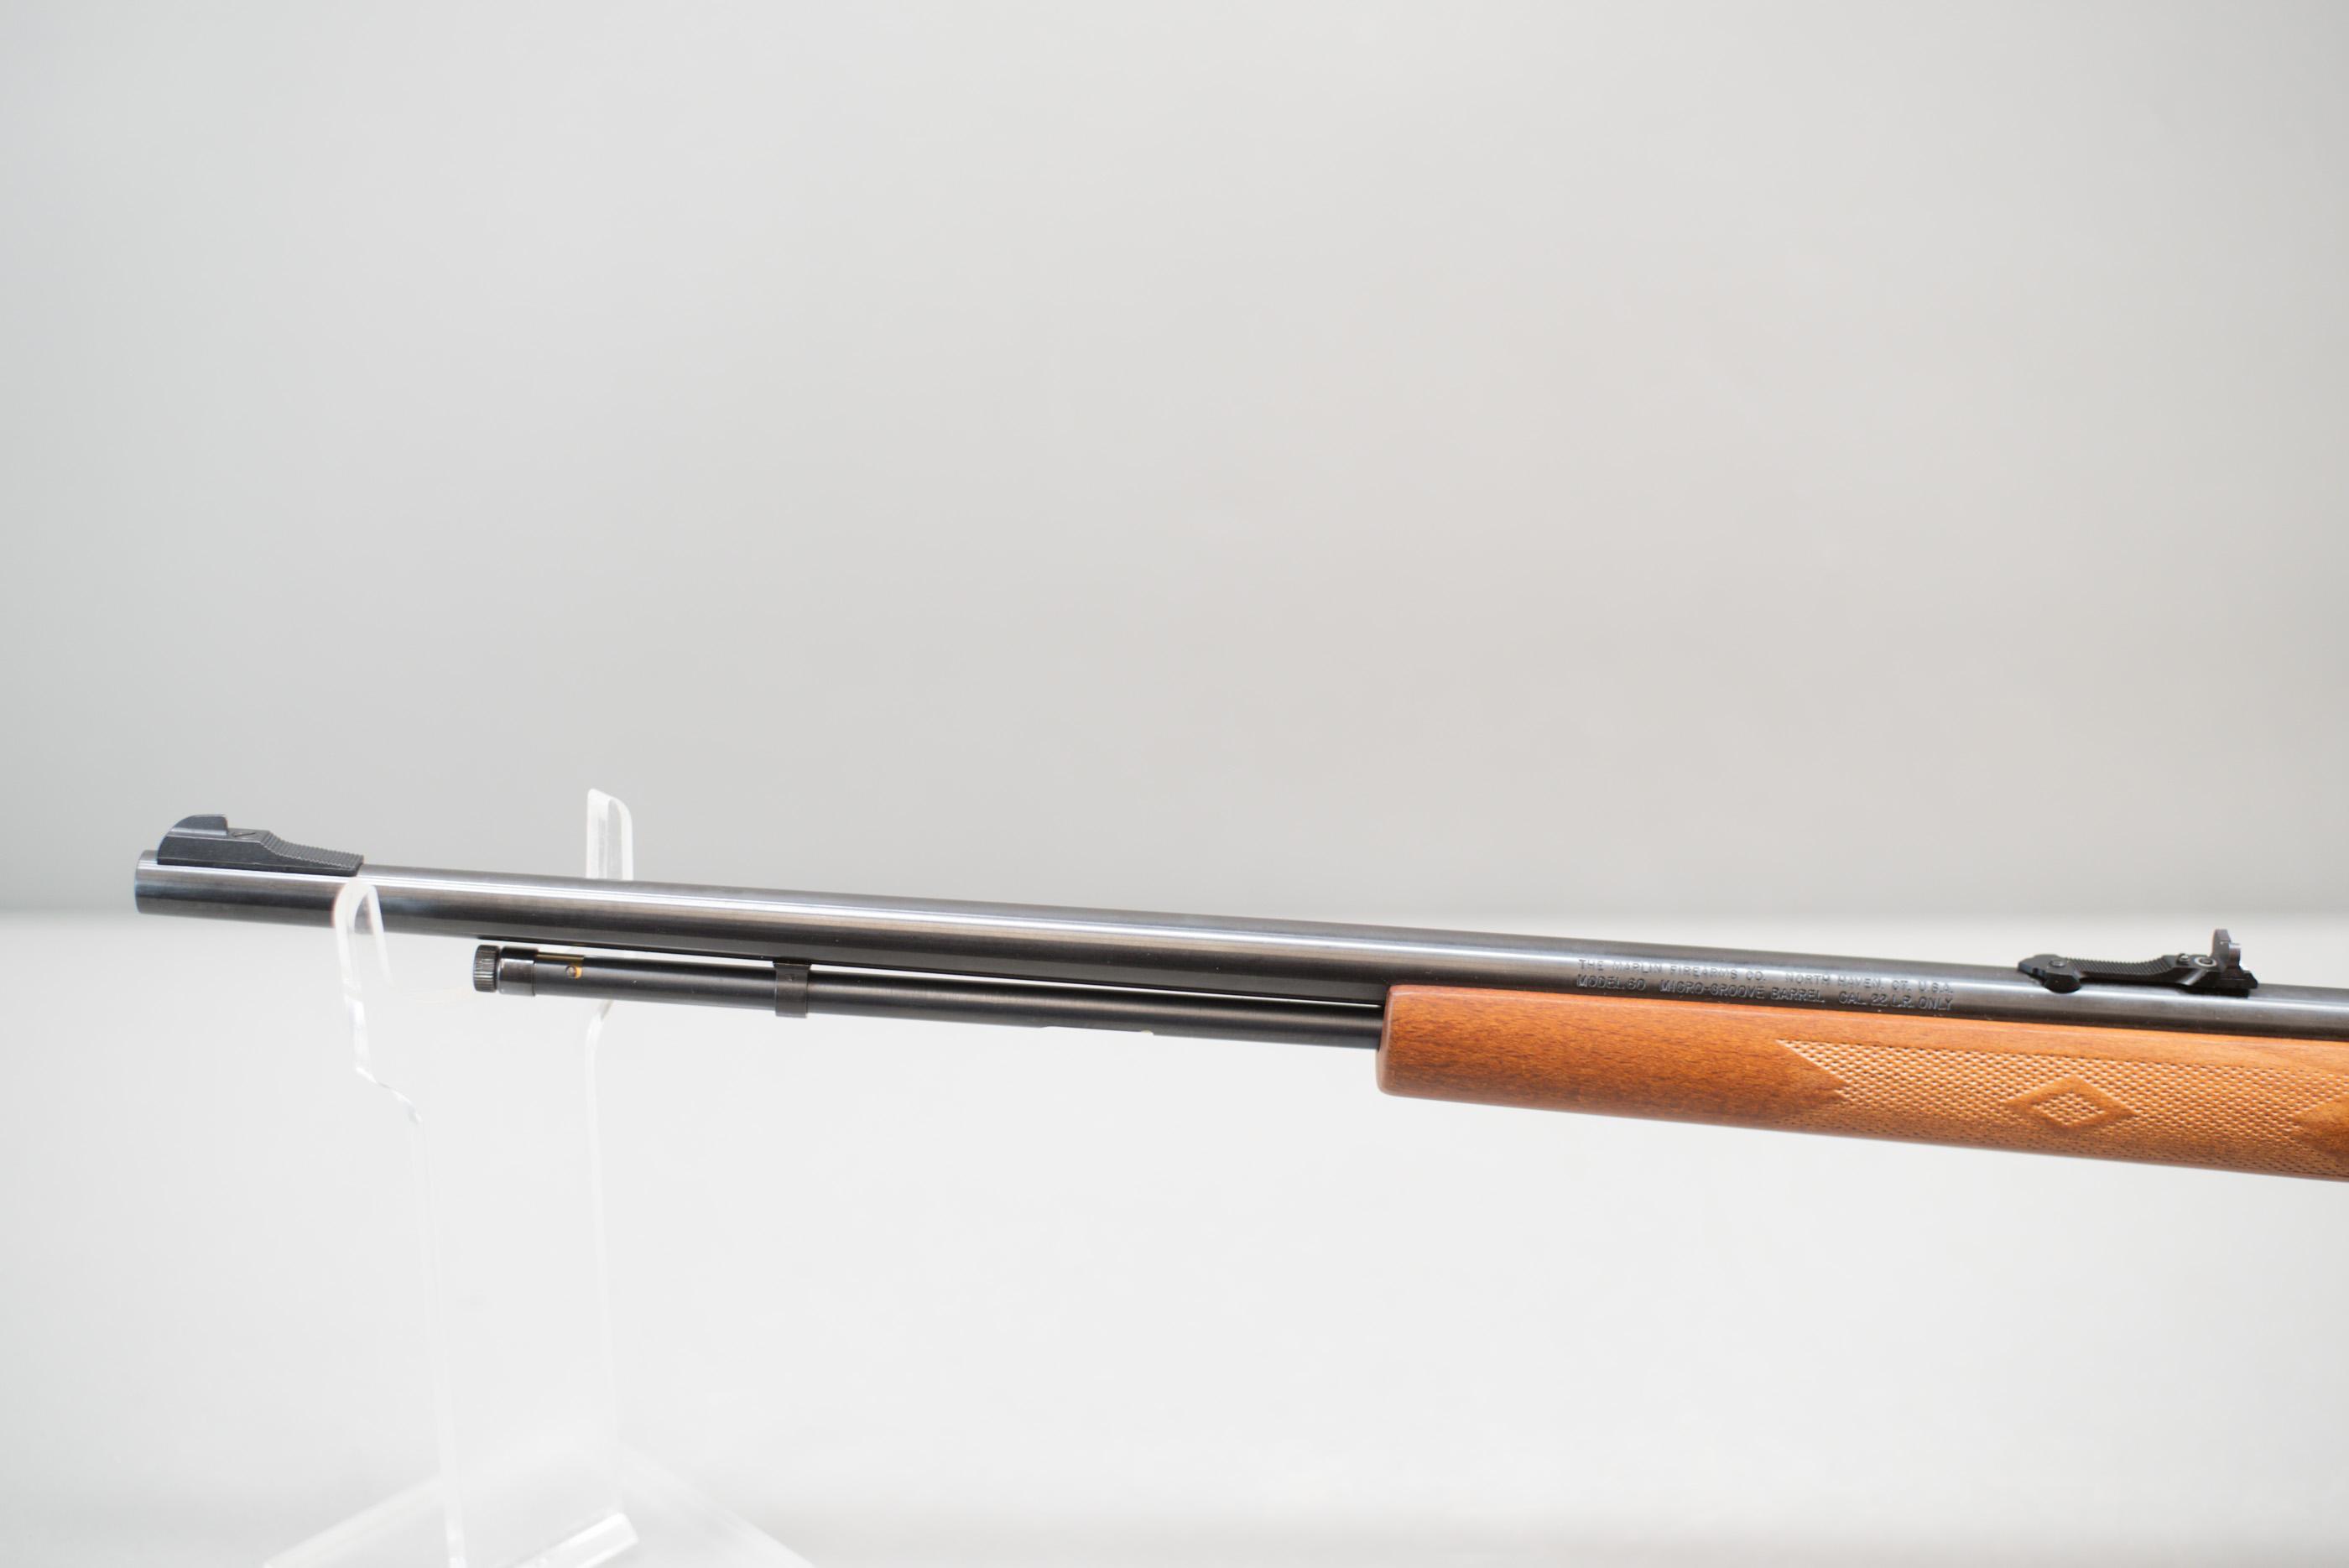 (R) Marlin Model 60 ".22LR Only" Rifle